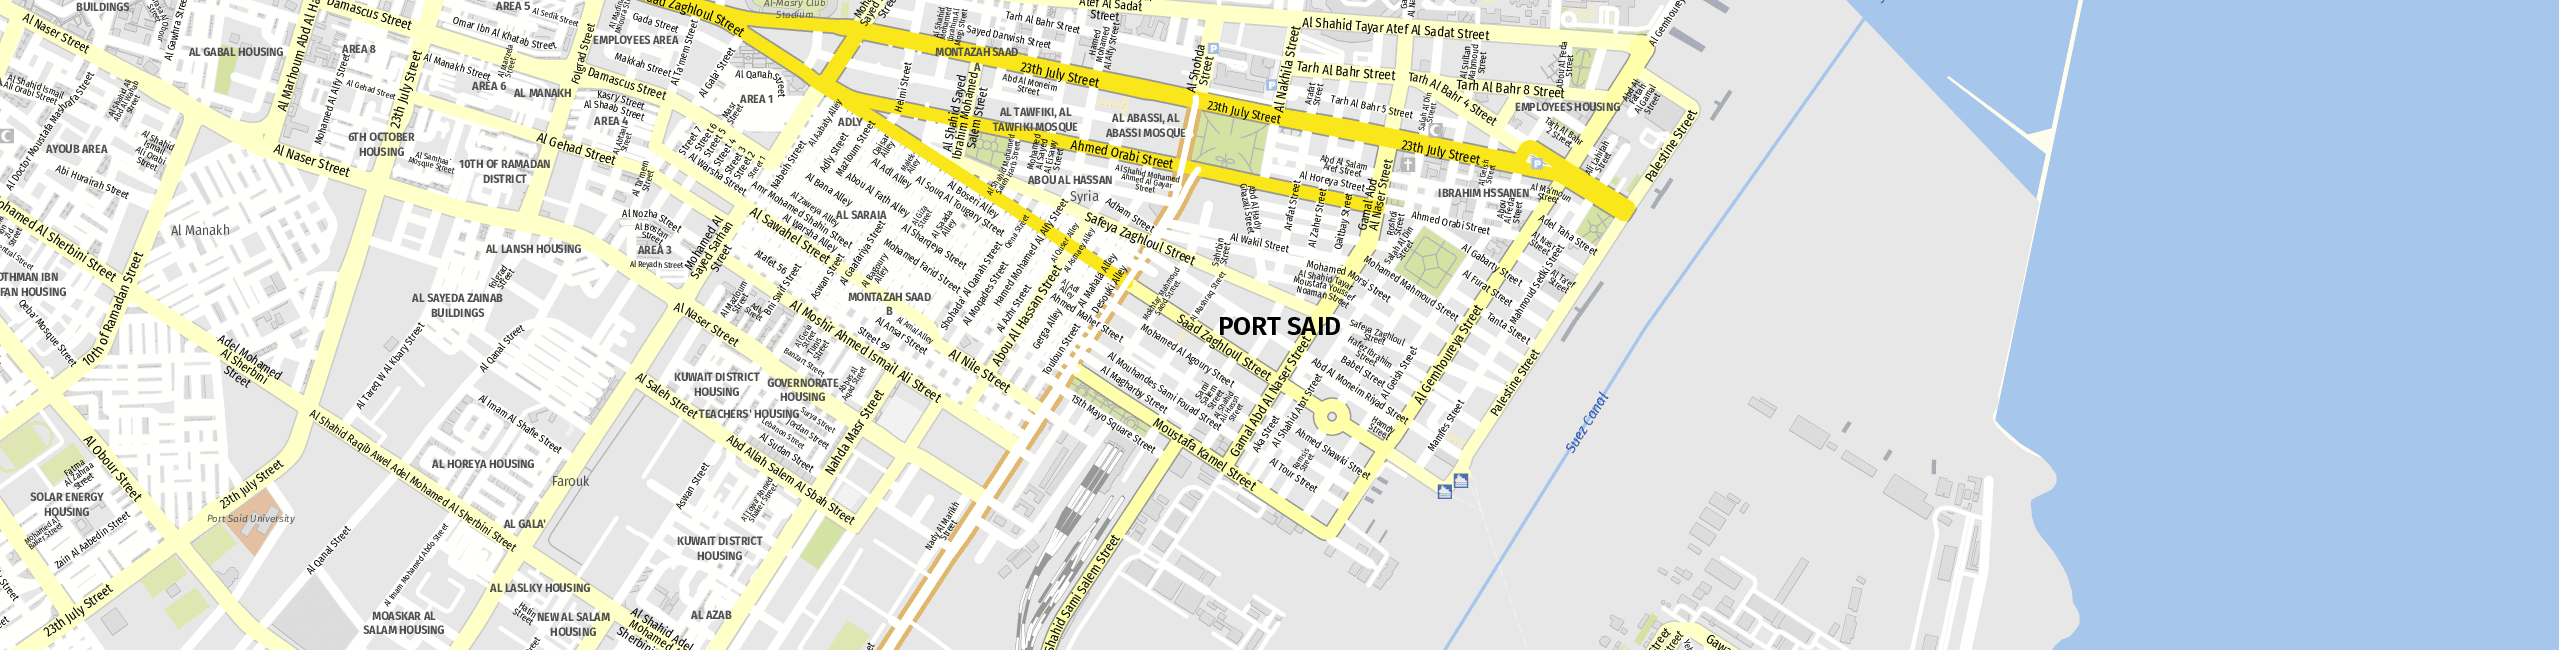 Stadtplan Port Said zum Downloaden.